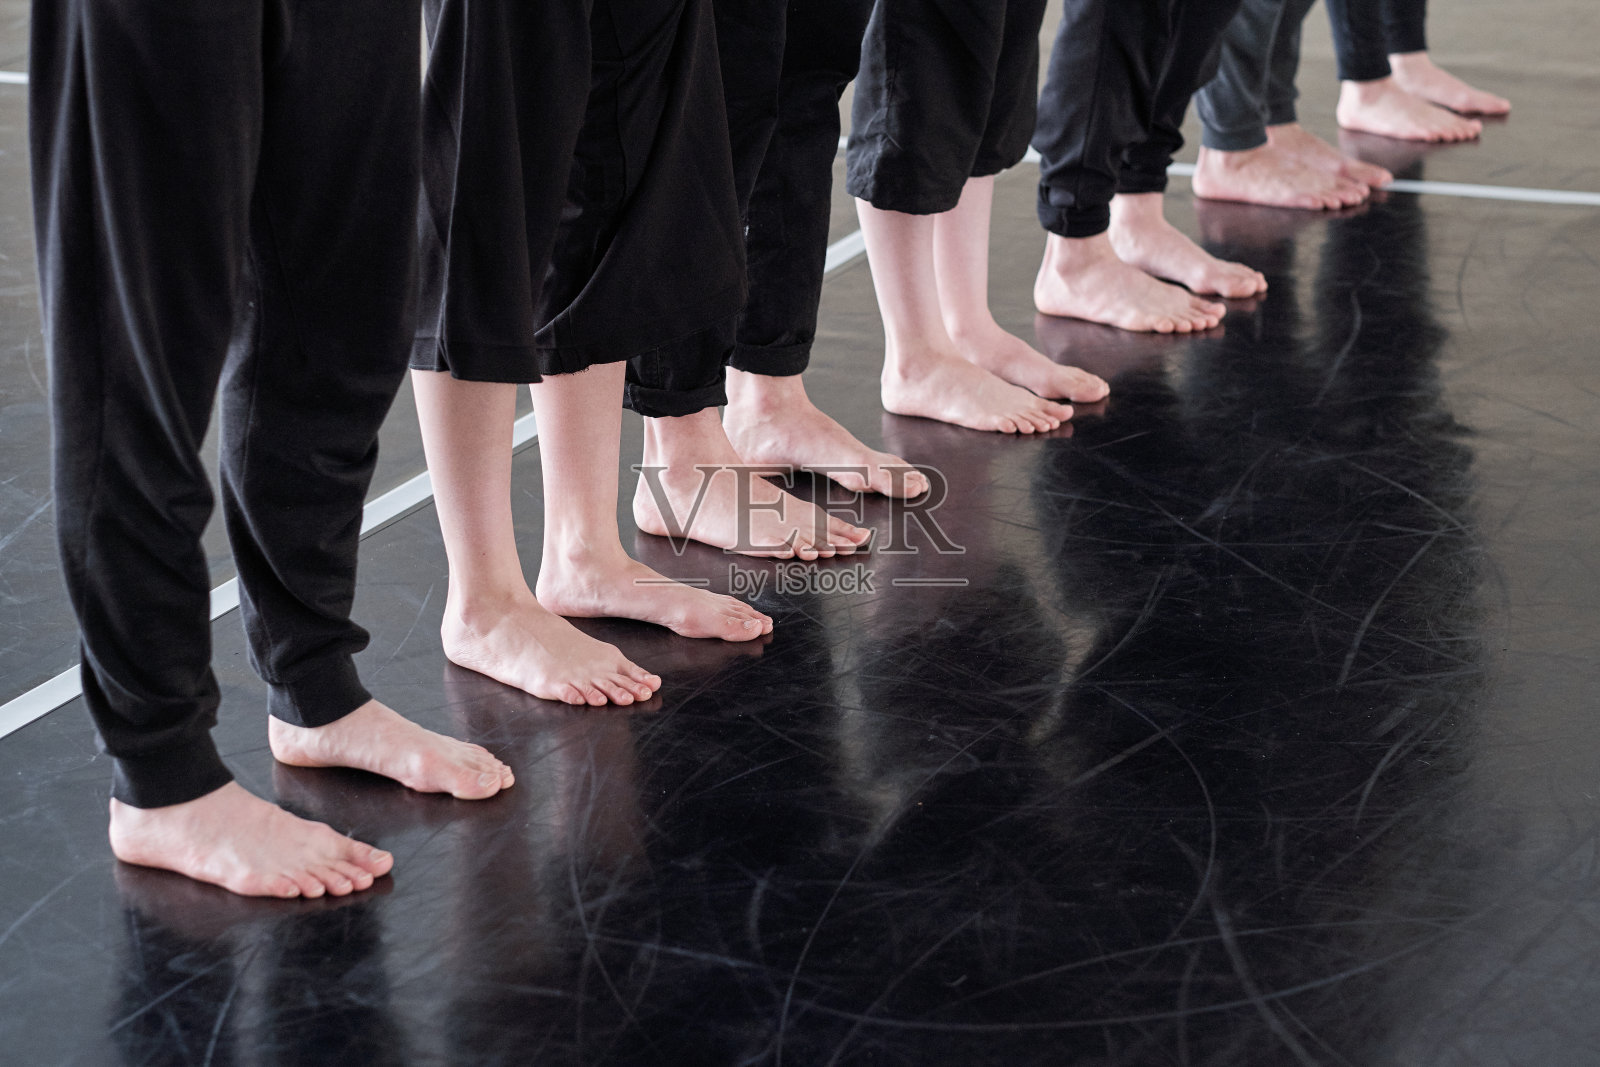 一排光脚的年轻舞者穿着黑色裤子站在地板上照片摄影图片